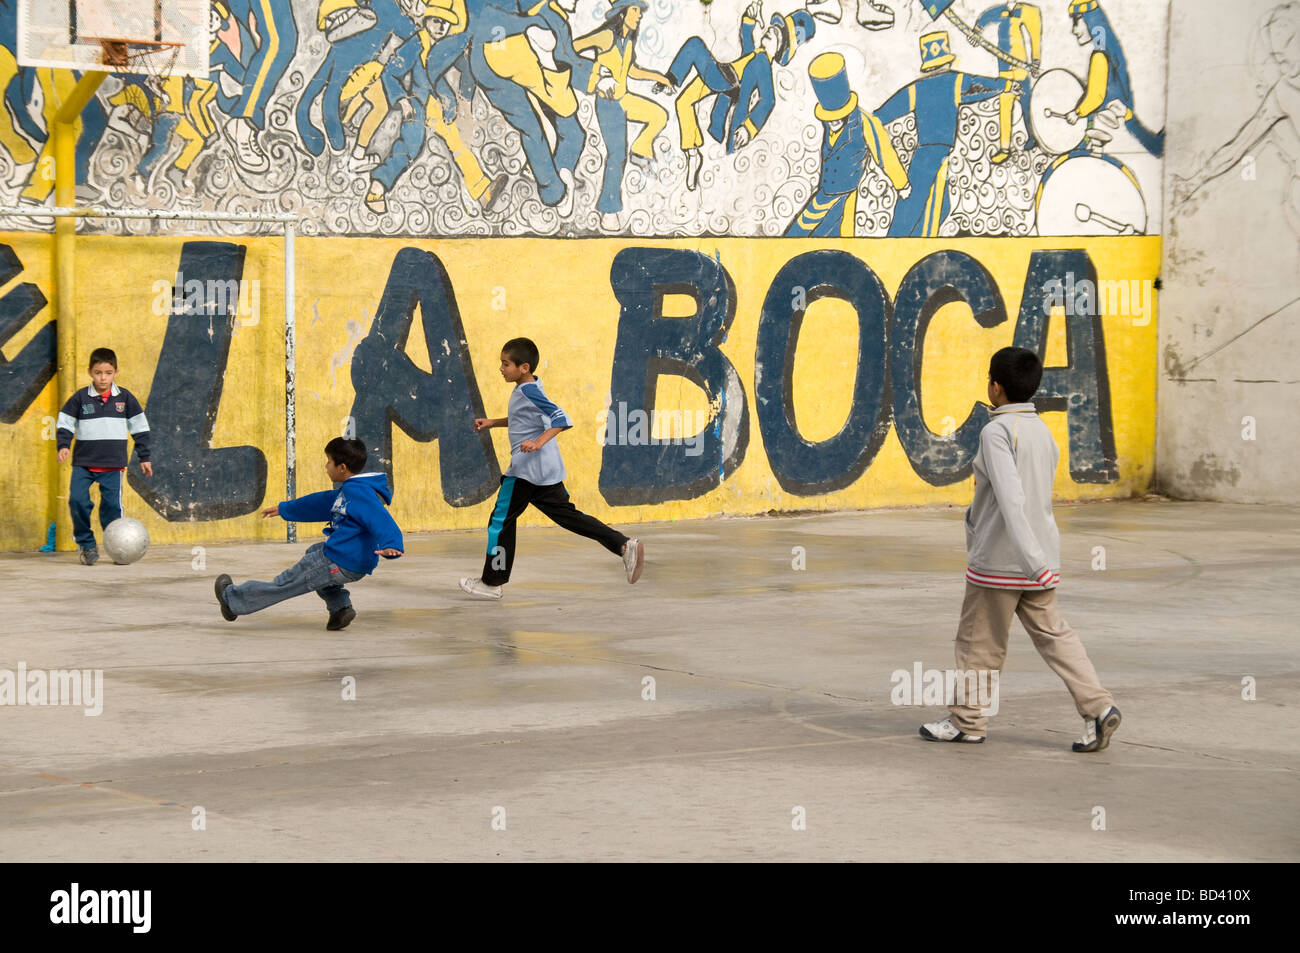 Ninos Jugando Al Futbol En El Barrio De La Boca Buenos Aires Argentina Fotografia De Stock Alamy